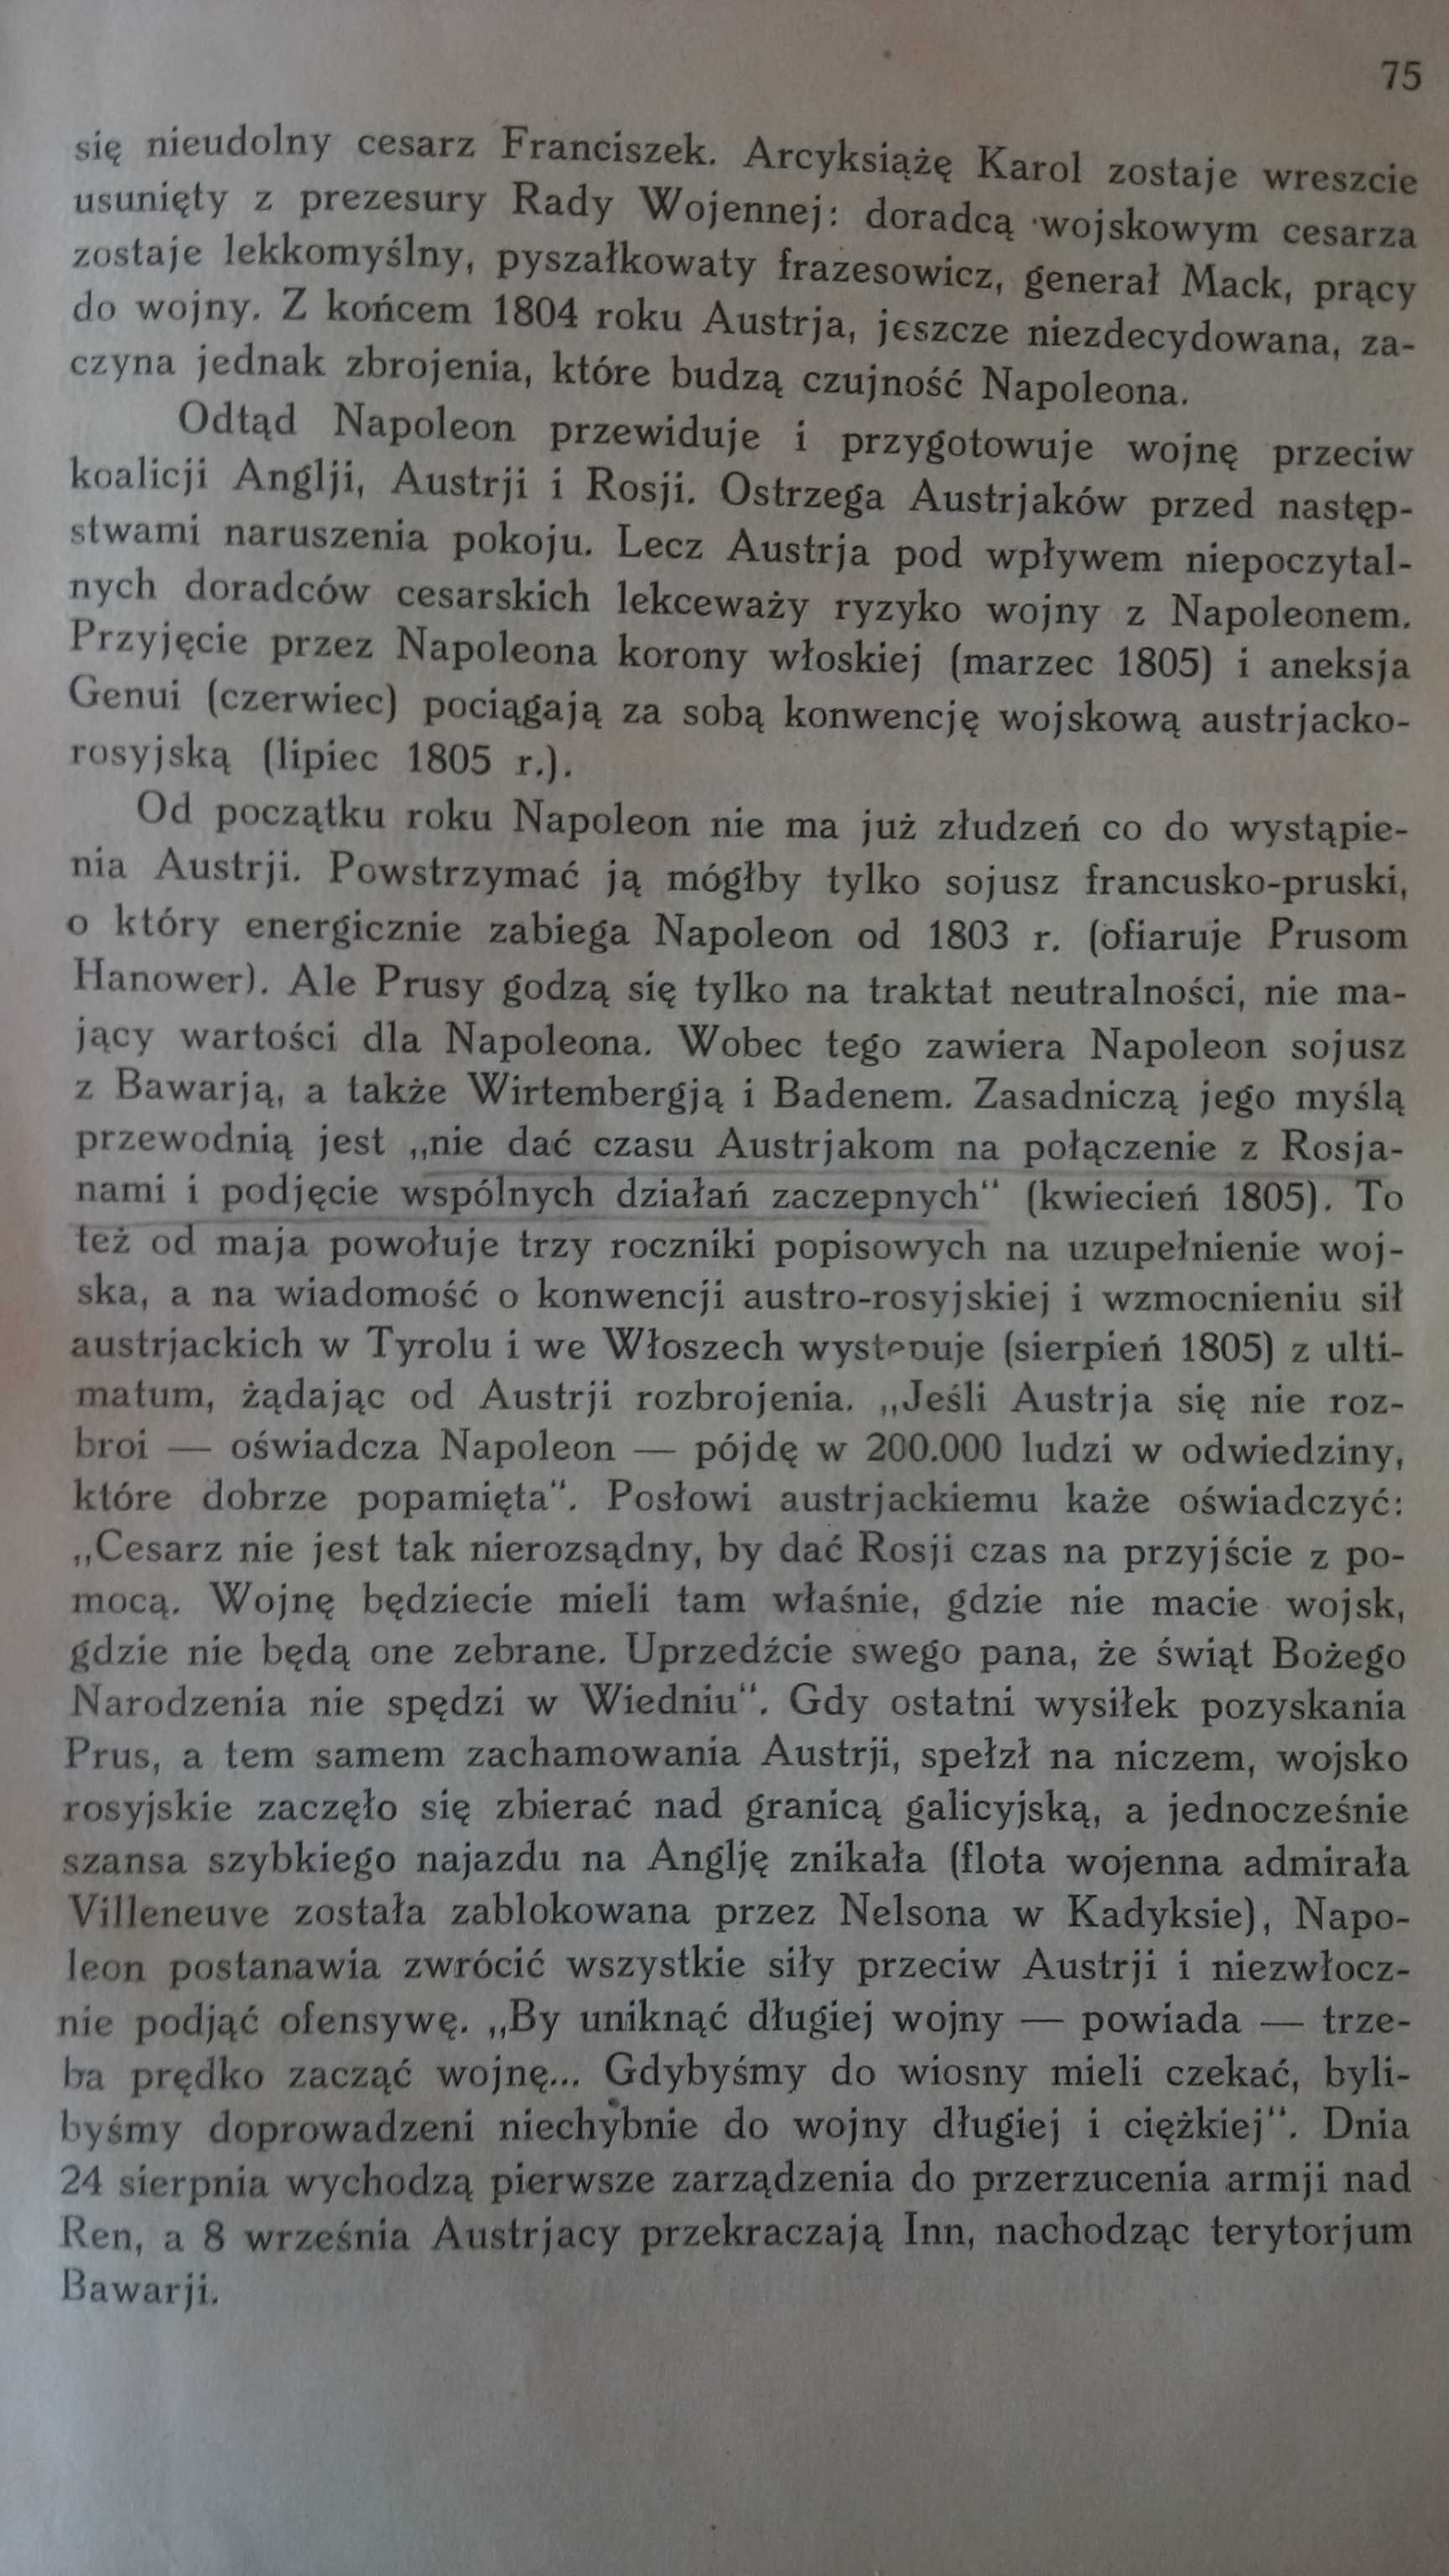 "Wojny Napoleońskie" tom 1 M.Kukiel 1927 książka prawie 100-letnia